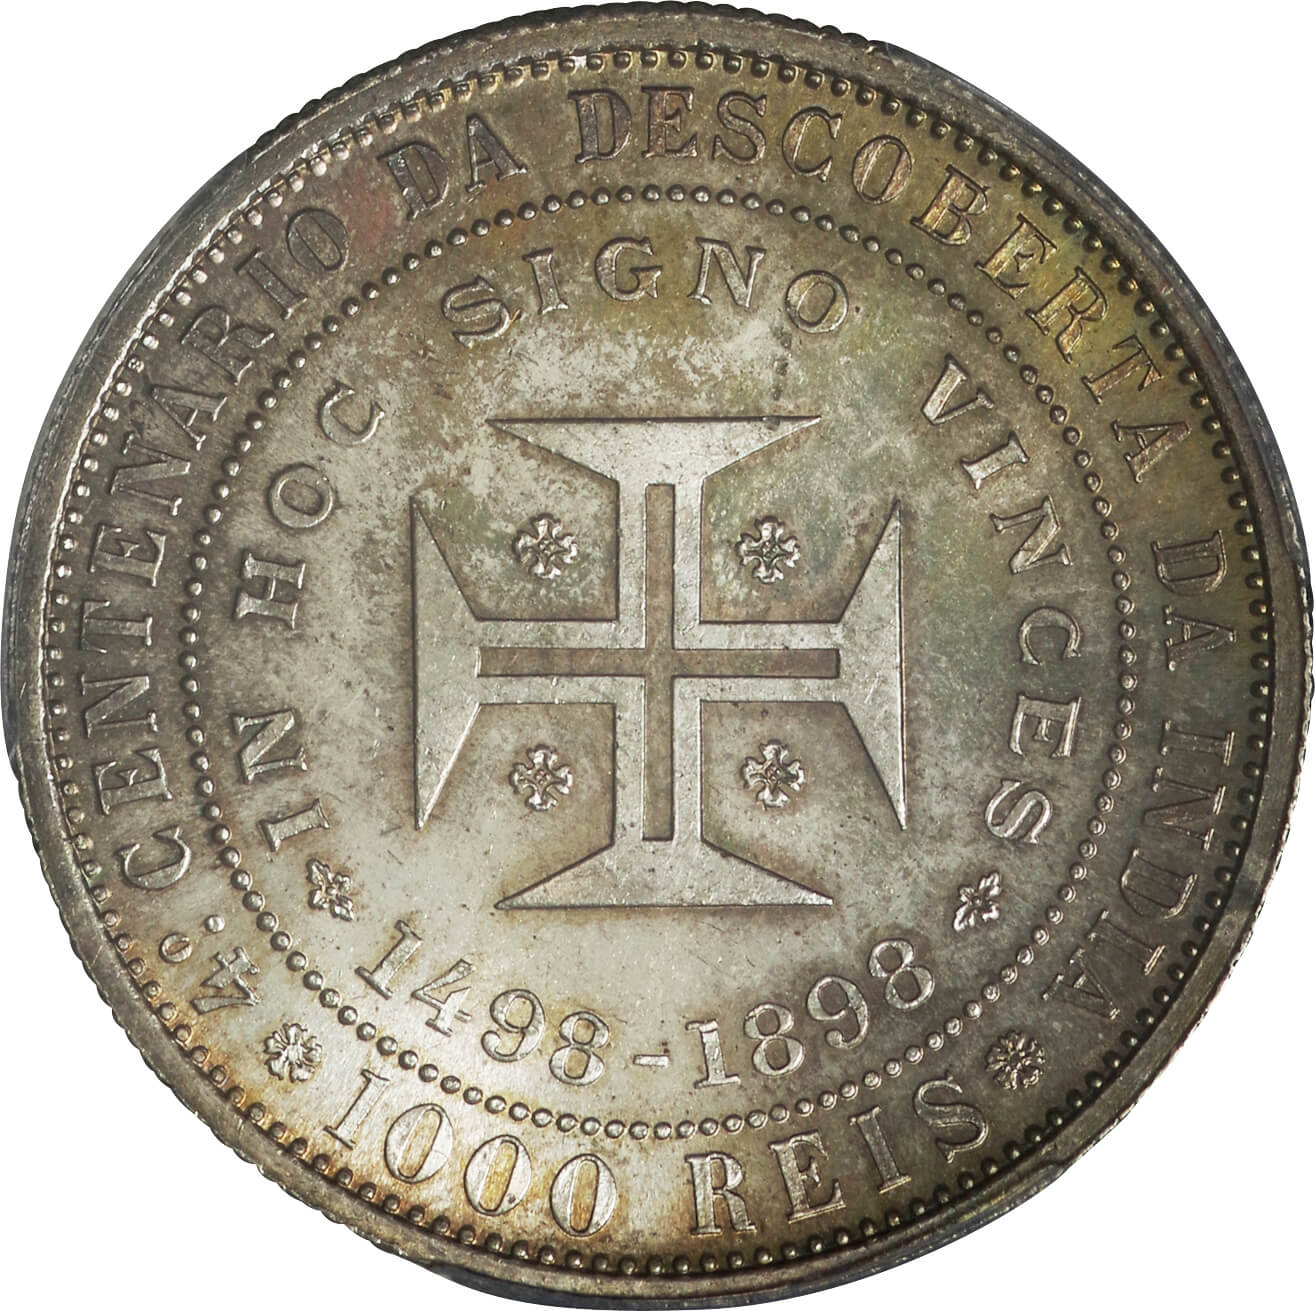 ポルトガル-Portugal. 1898. PCGS MS64. 未使用. UNC. Silver. 1000レイス(Reis).  インド航路発見400周年記念 1000レイス銀貨 1898年 ... | Taisei Auction